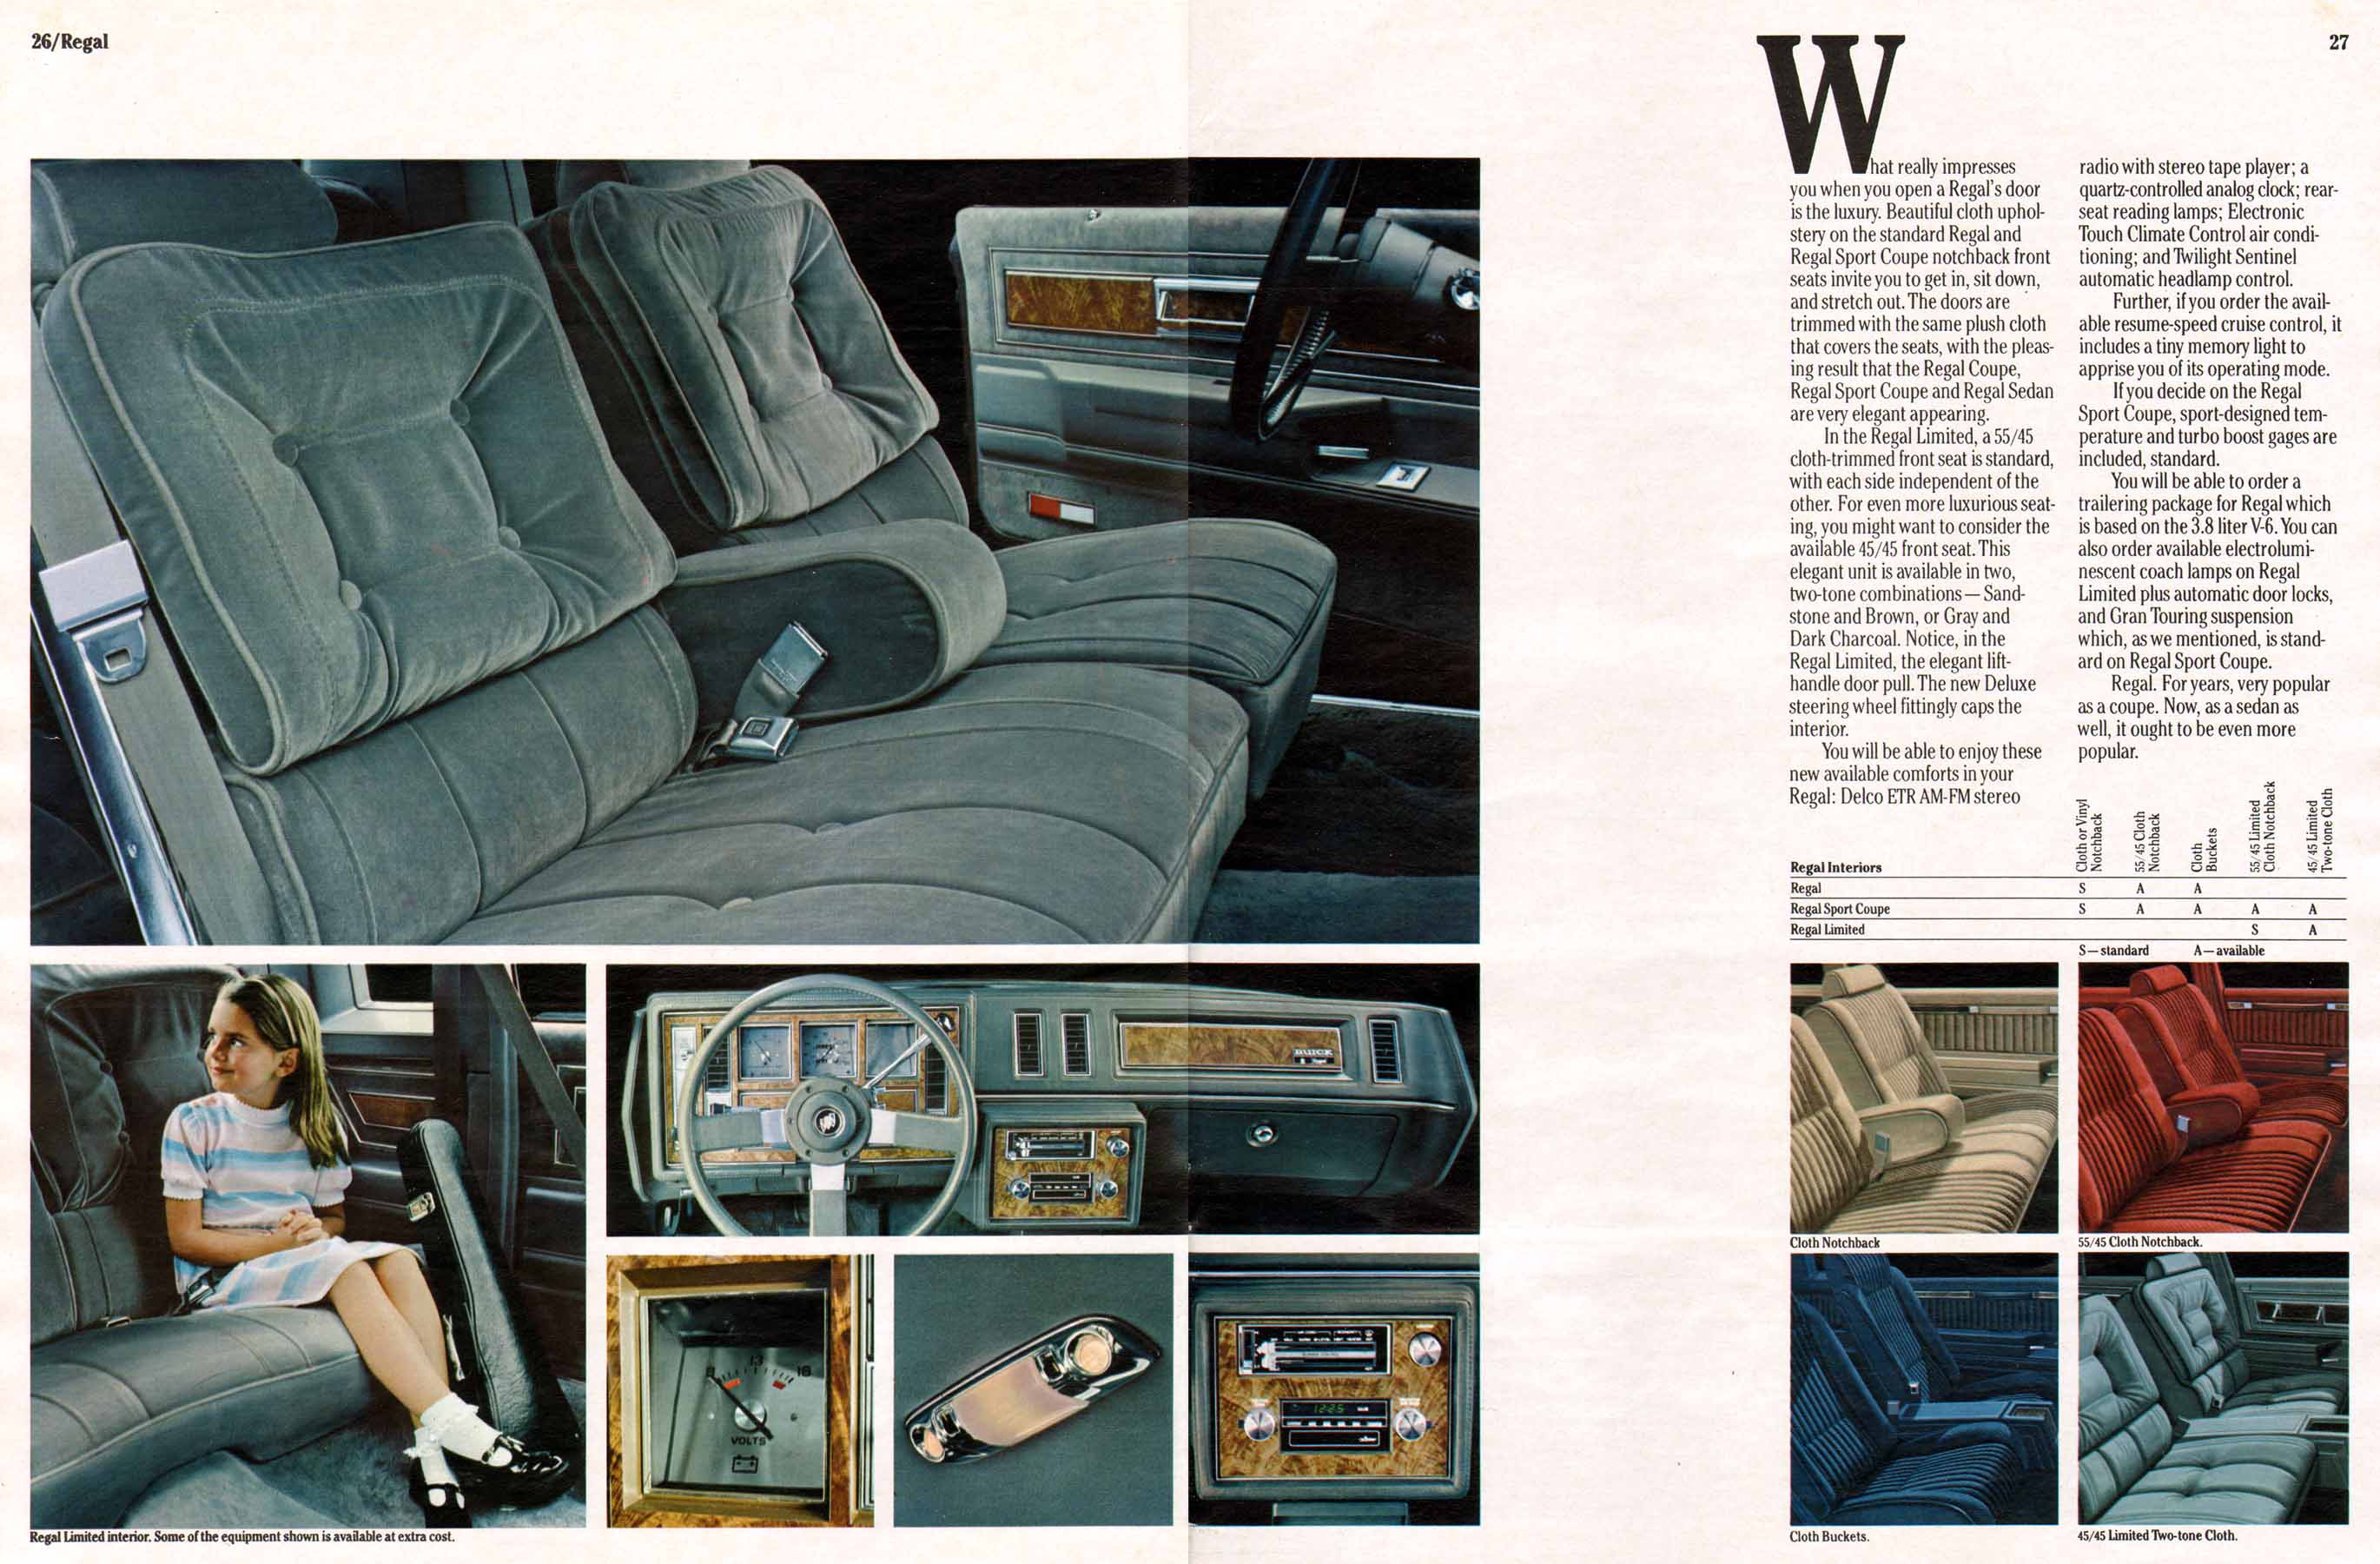 1982 Buick Full Line Prestige-26-27